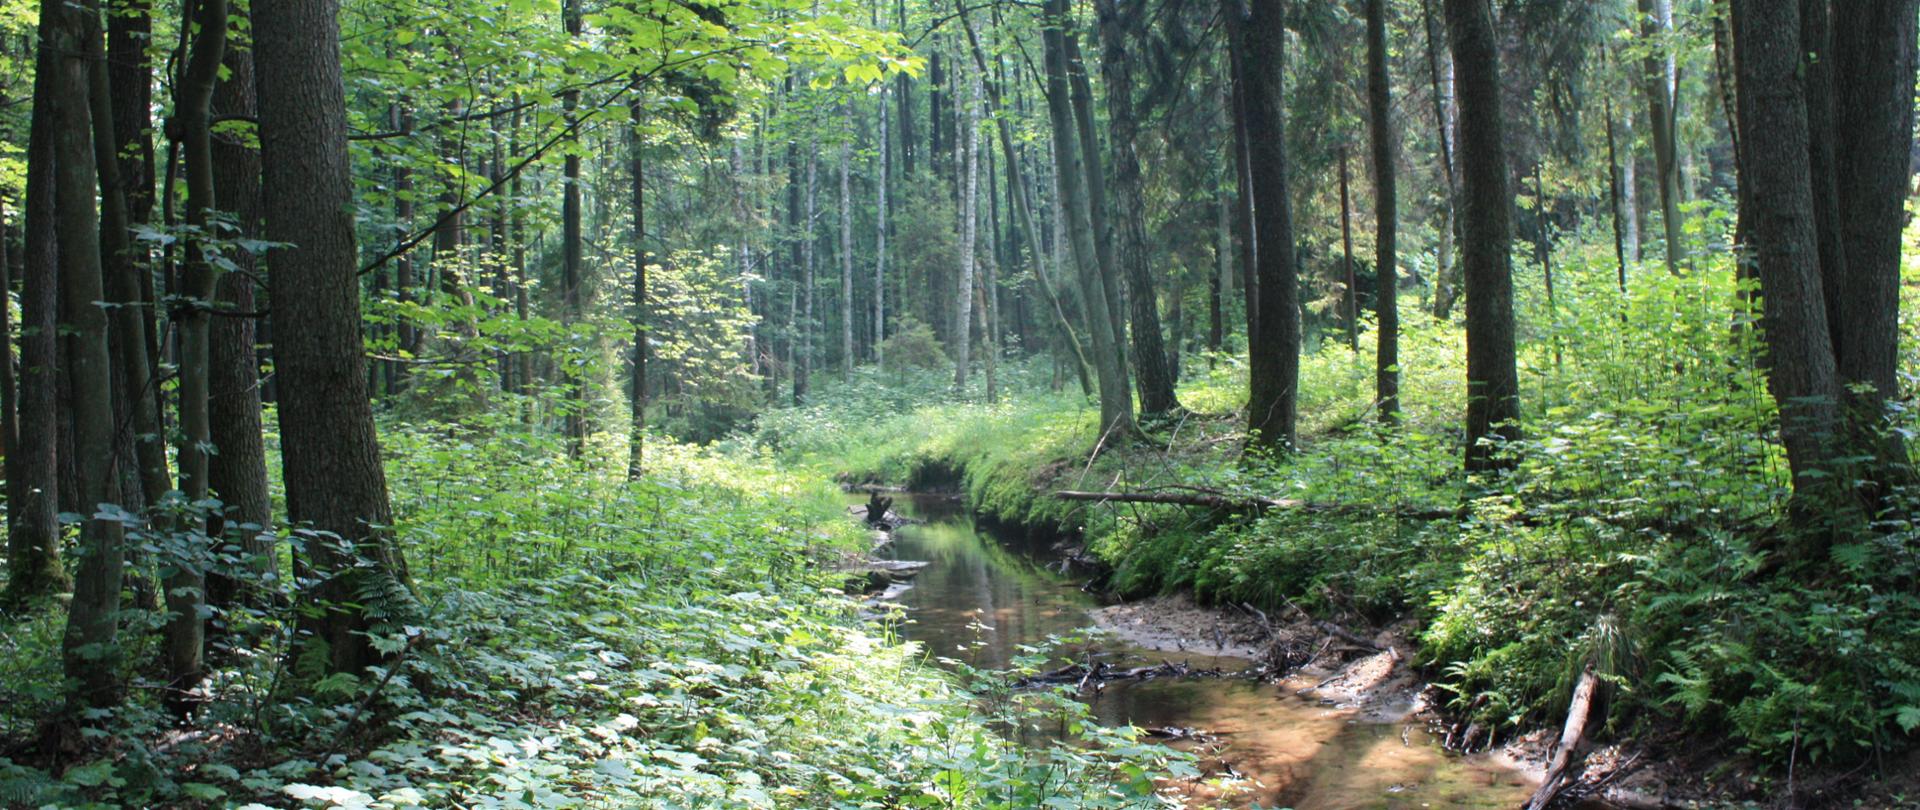 Zdjęcie przedstawia fragment rezerwatu - gęsty las, środkiem płynący strumień